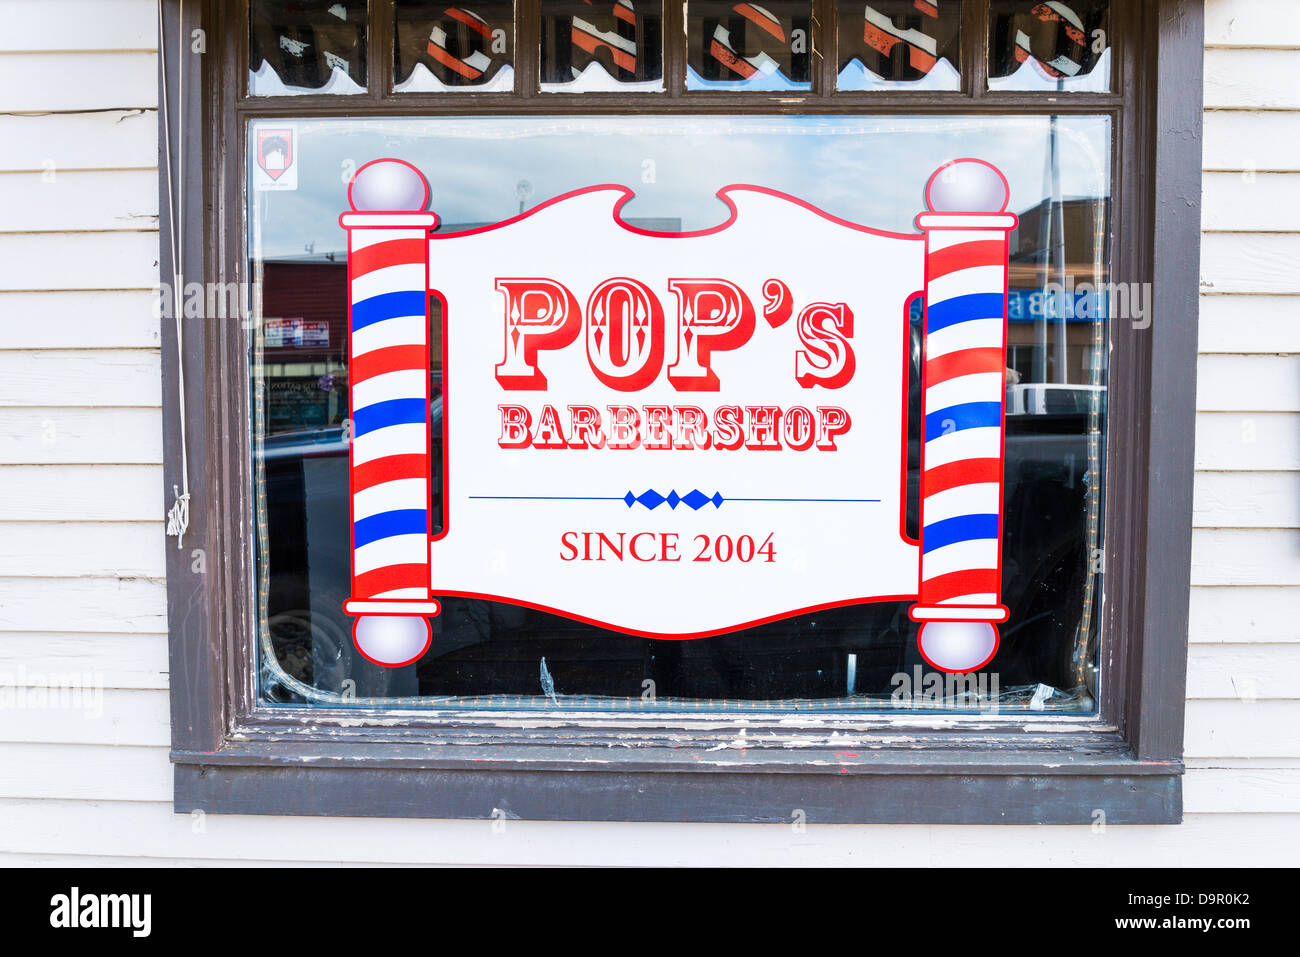 Pop's Barbershop Stock Photo